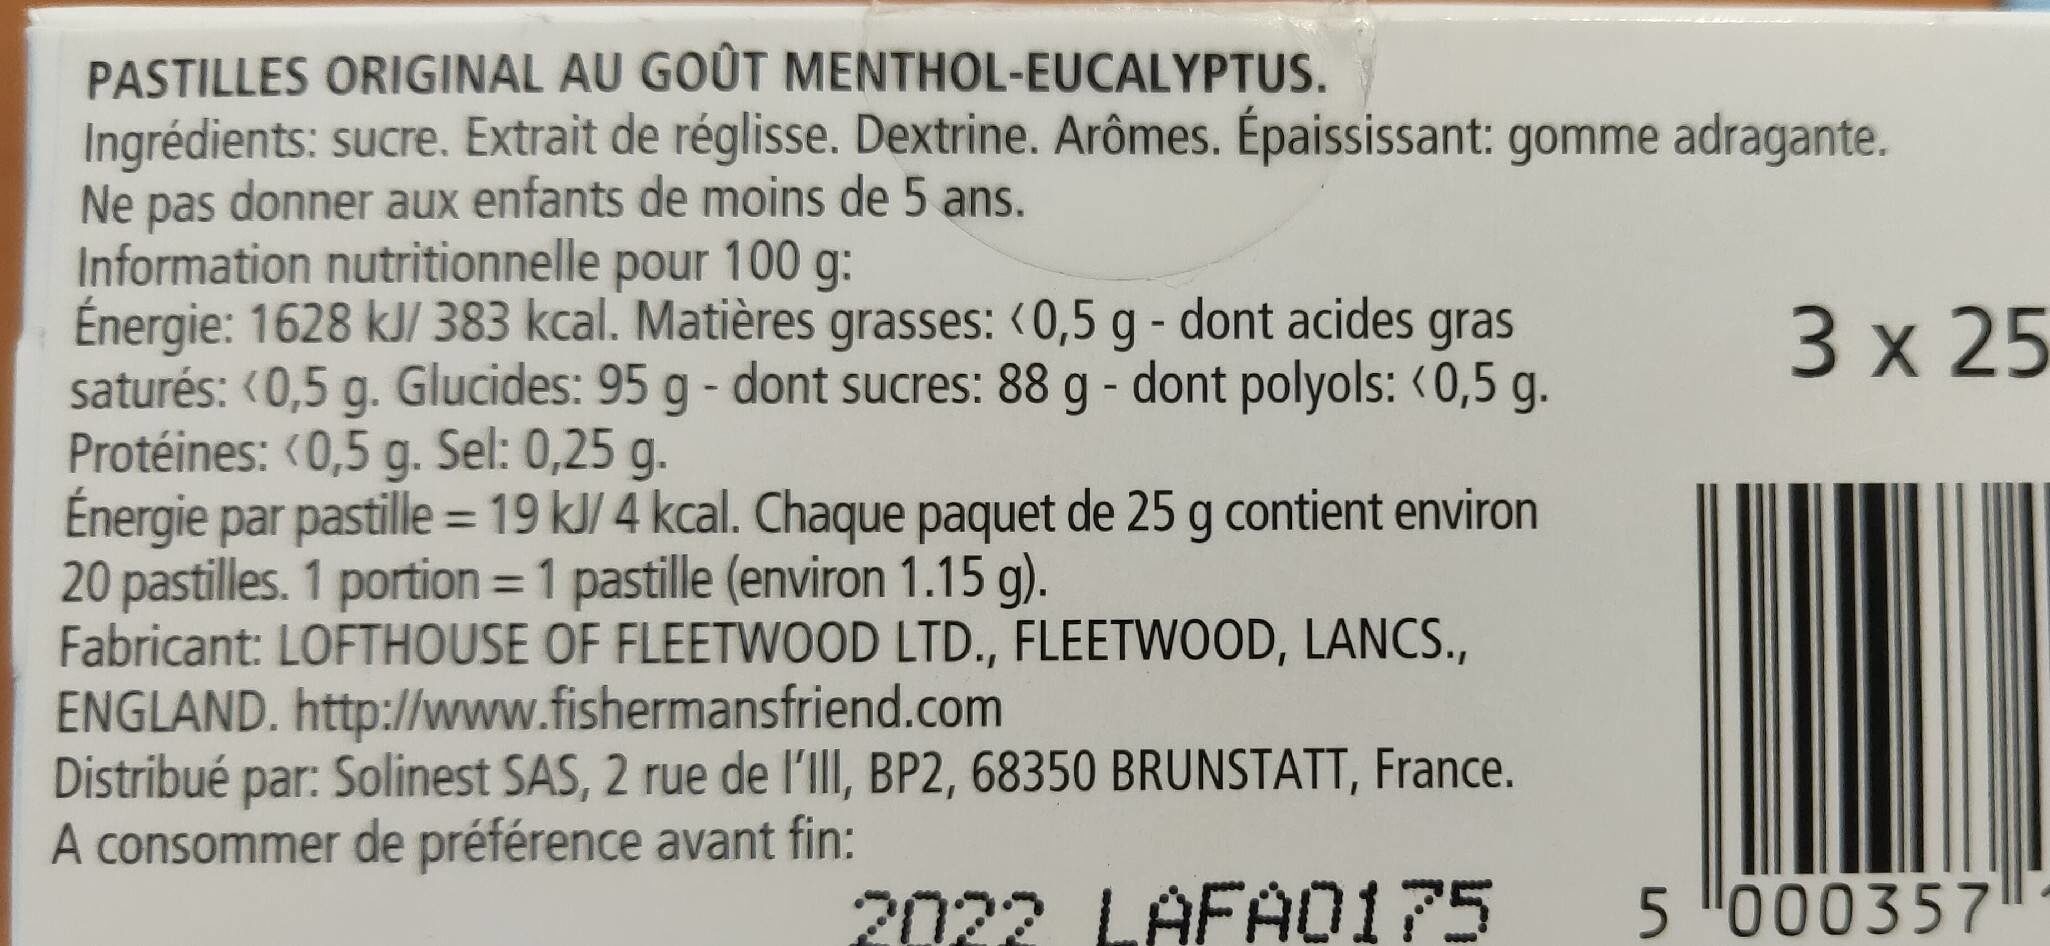 Pastilles menthol-eucalyptus - Nutrition facts - fr